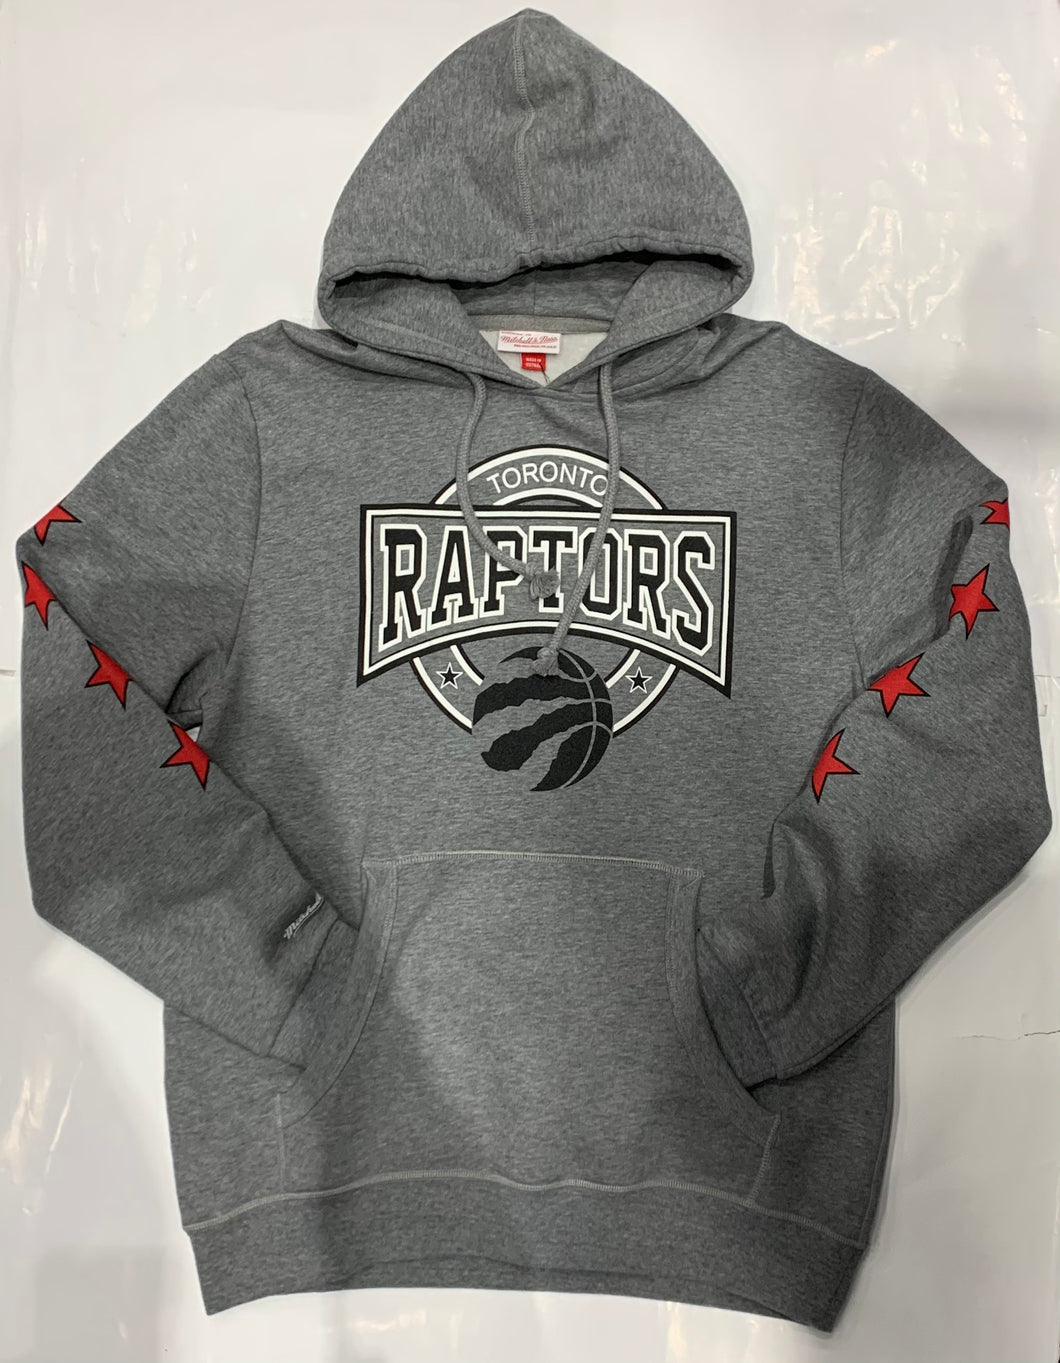 Toronto Raptors Grey Pullover Hoodie With Star Sleeves